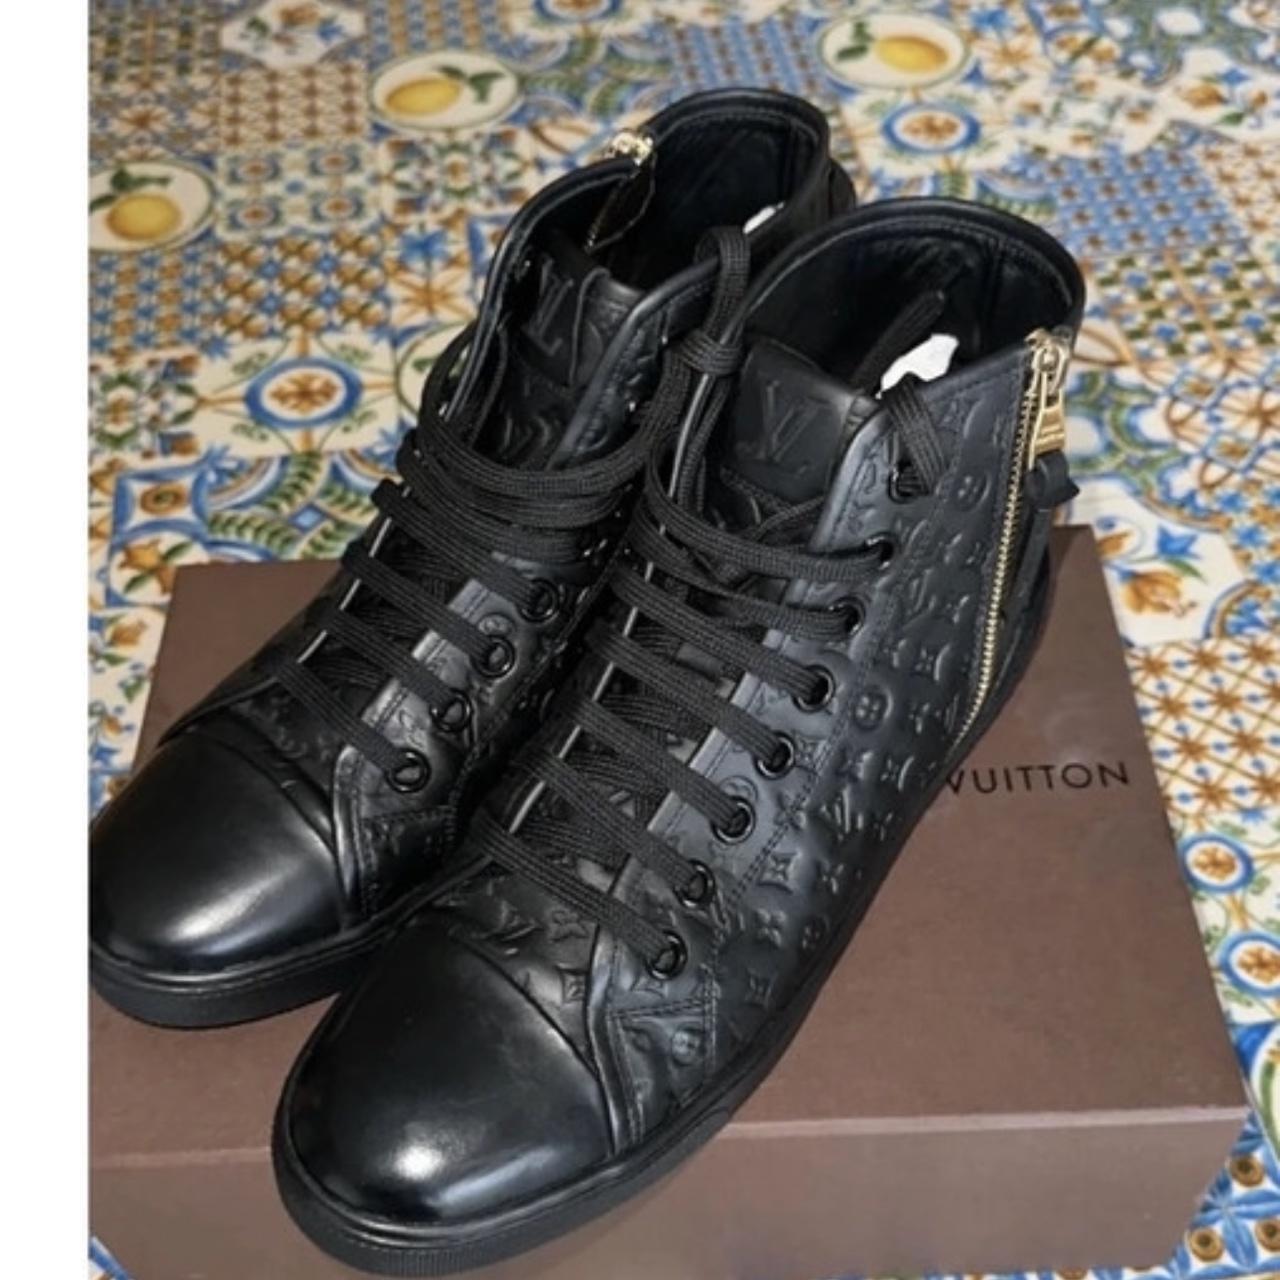 Louis Vuitton Stellar black sneaker boots, was a - Depop